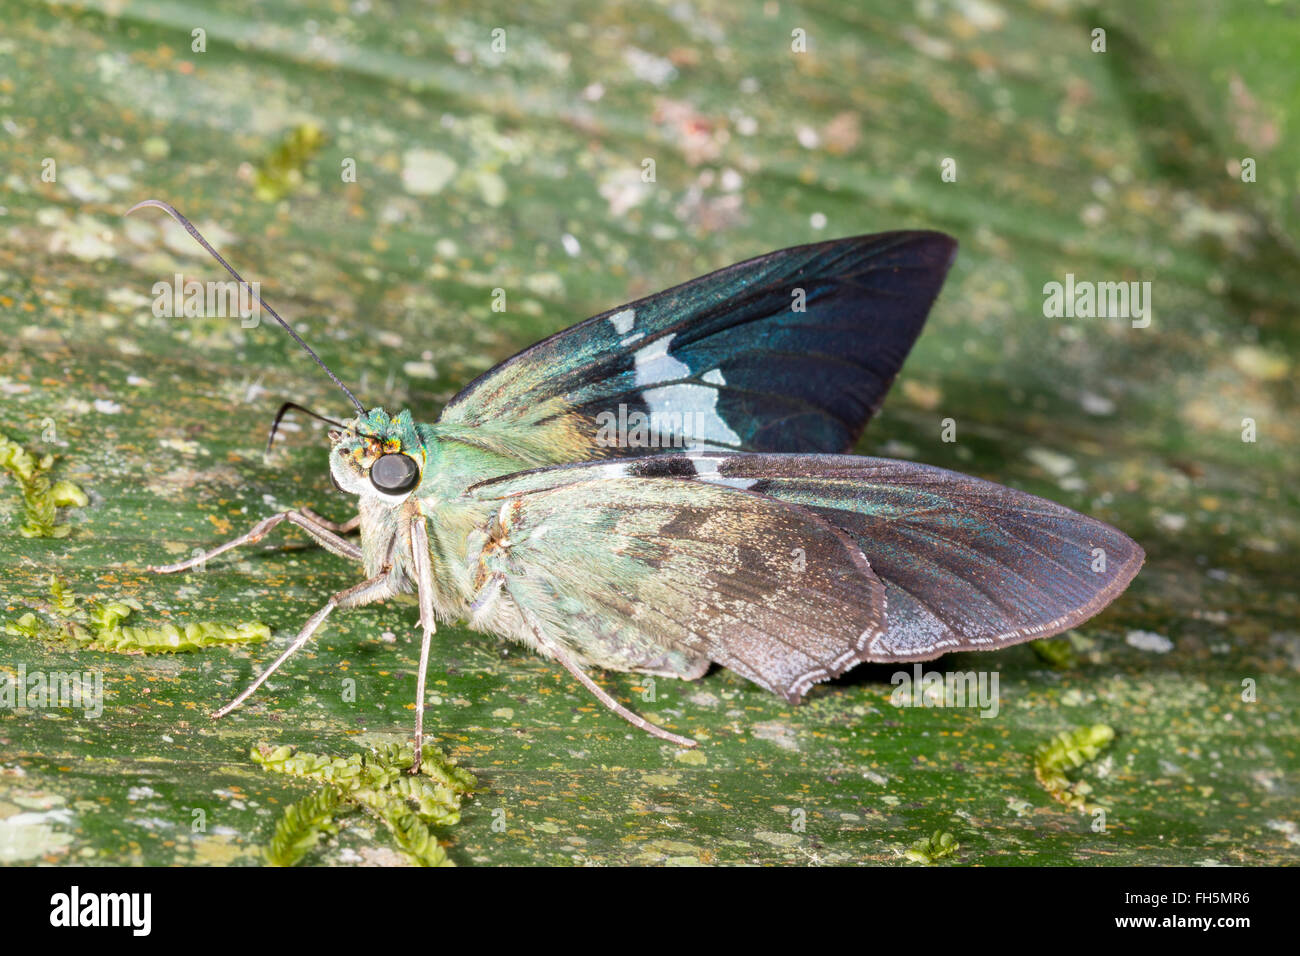 Skipper (Hesperidae) Famille papillon sur une feuille dans la forêt tropicale, province de Pastaza, Equateur Banque D'Images